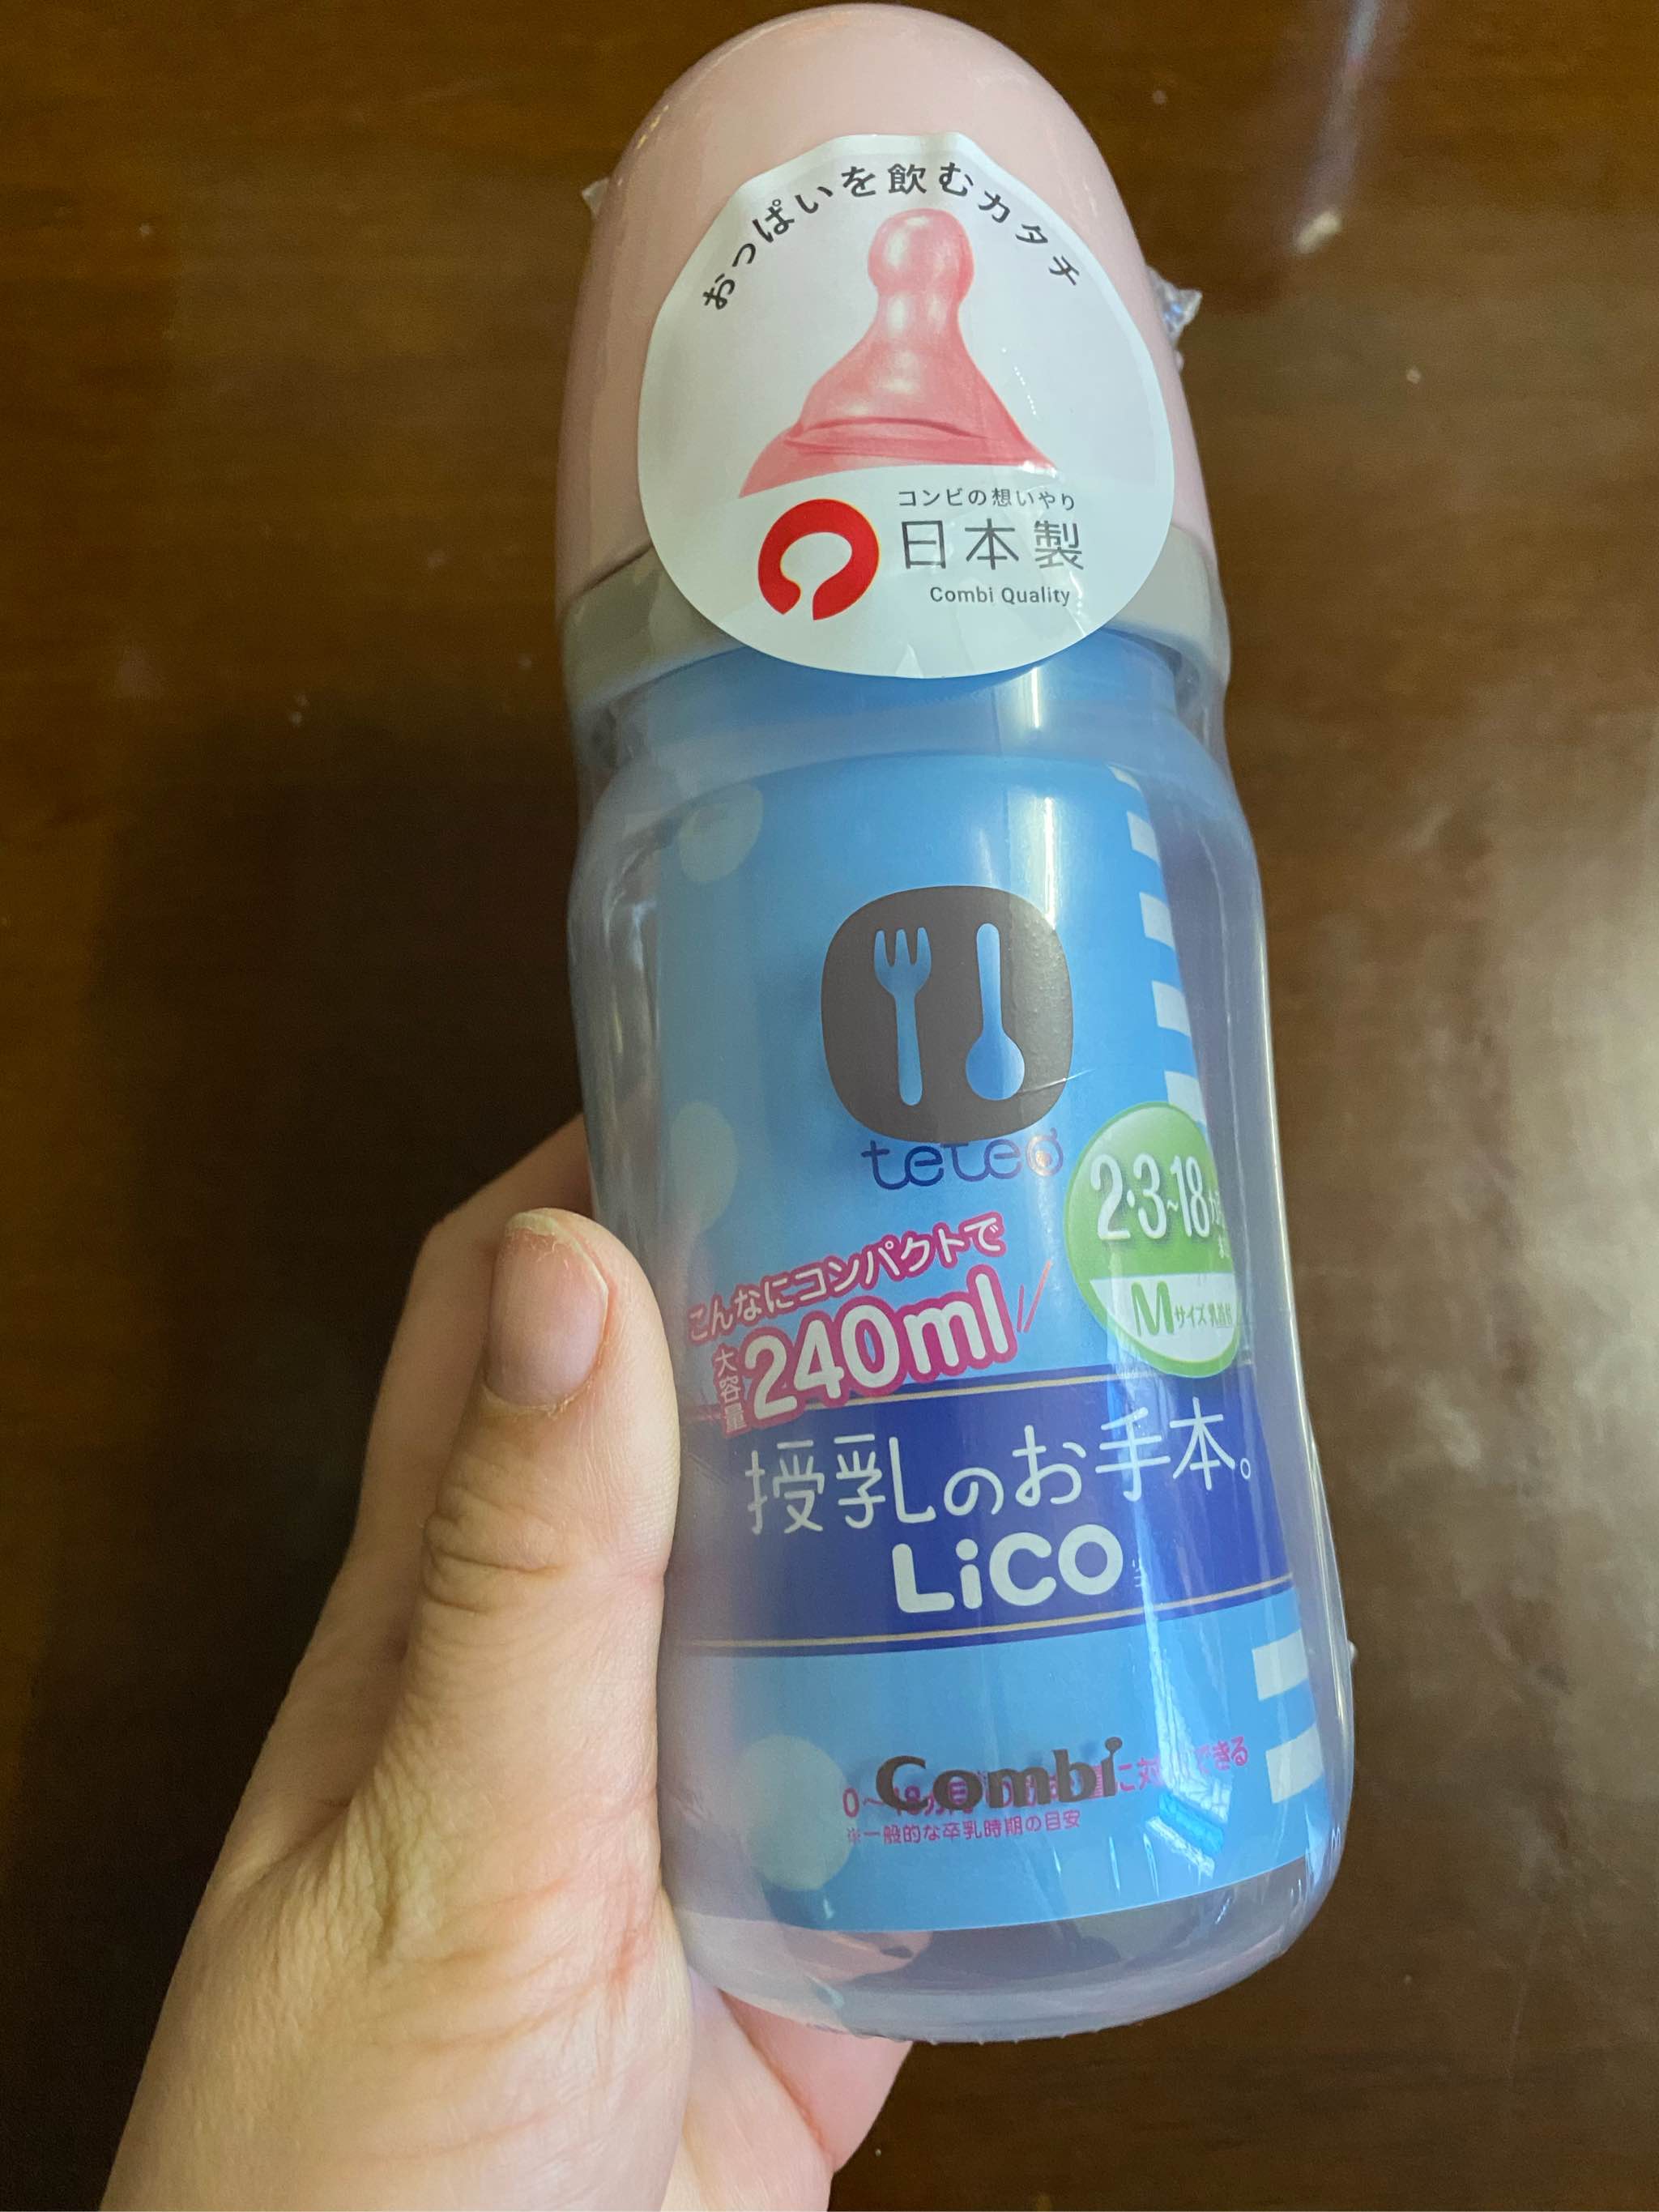 0元试用日本康贝奶瓶性价比高吗?深度体验报告